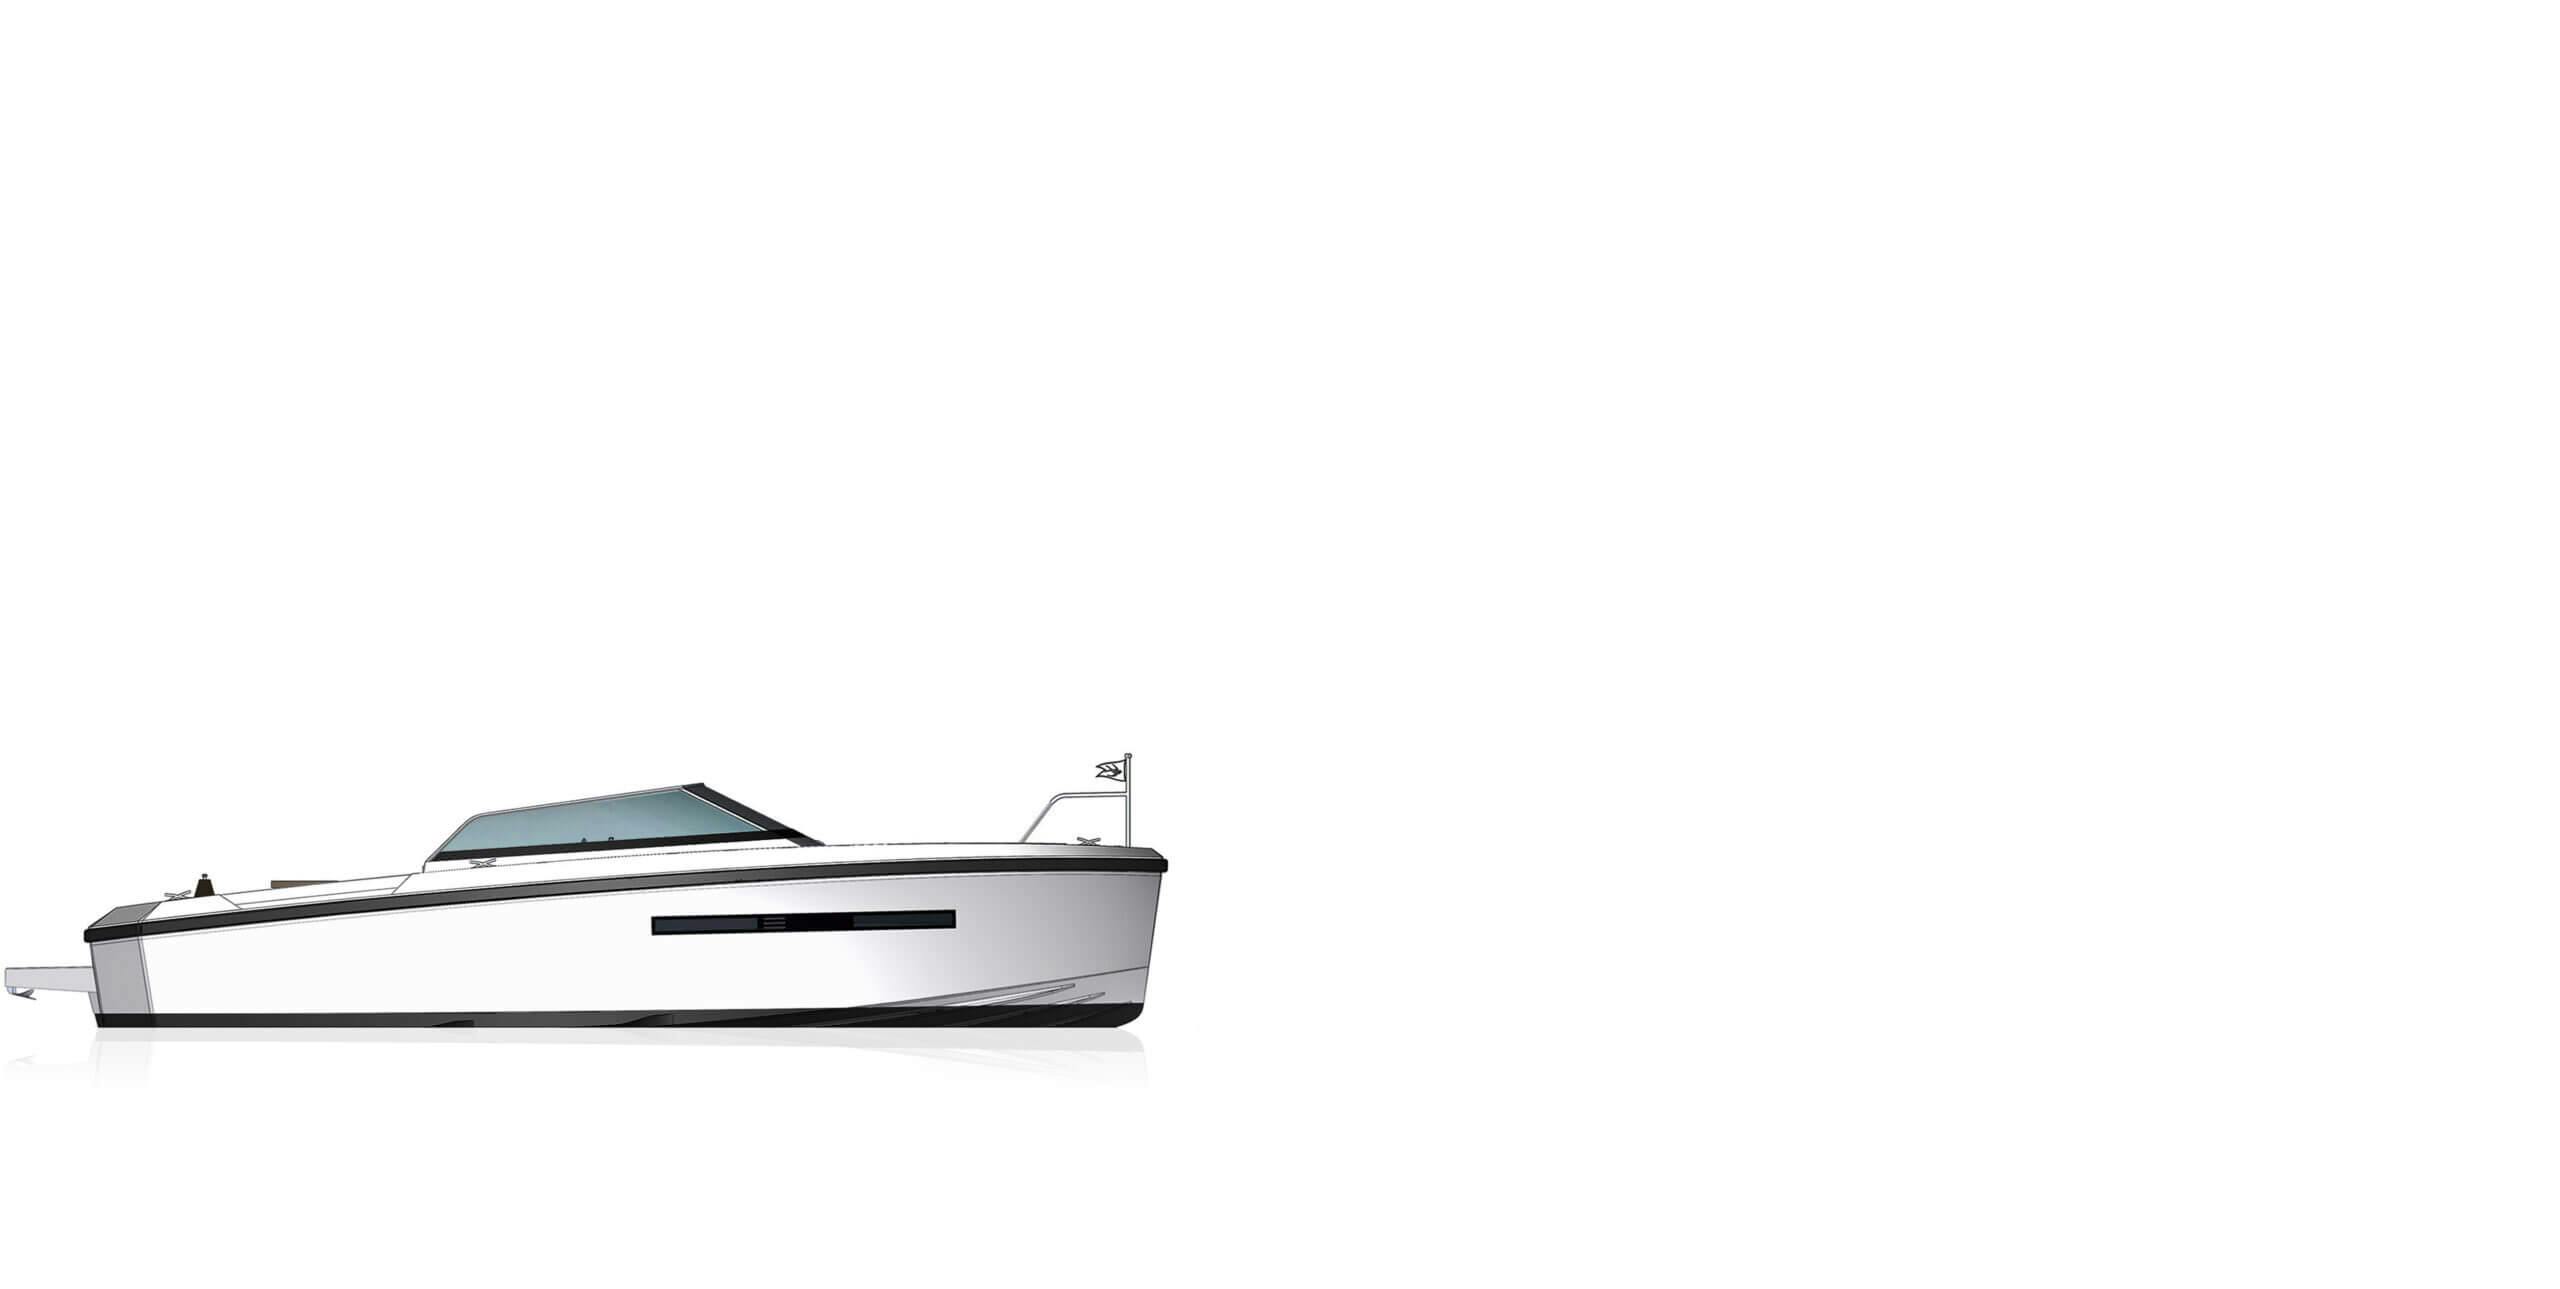 Boat Model: rhoddelta_sec3_delta_33open_1